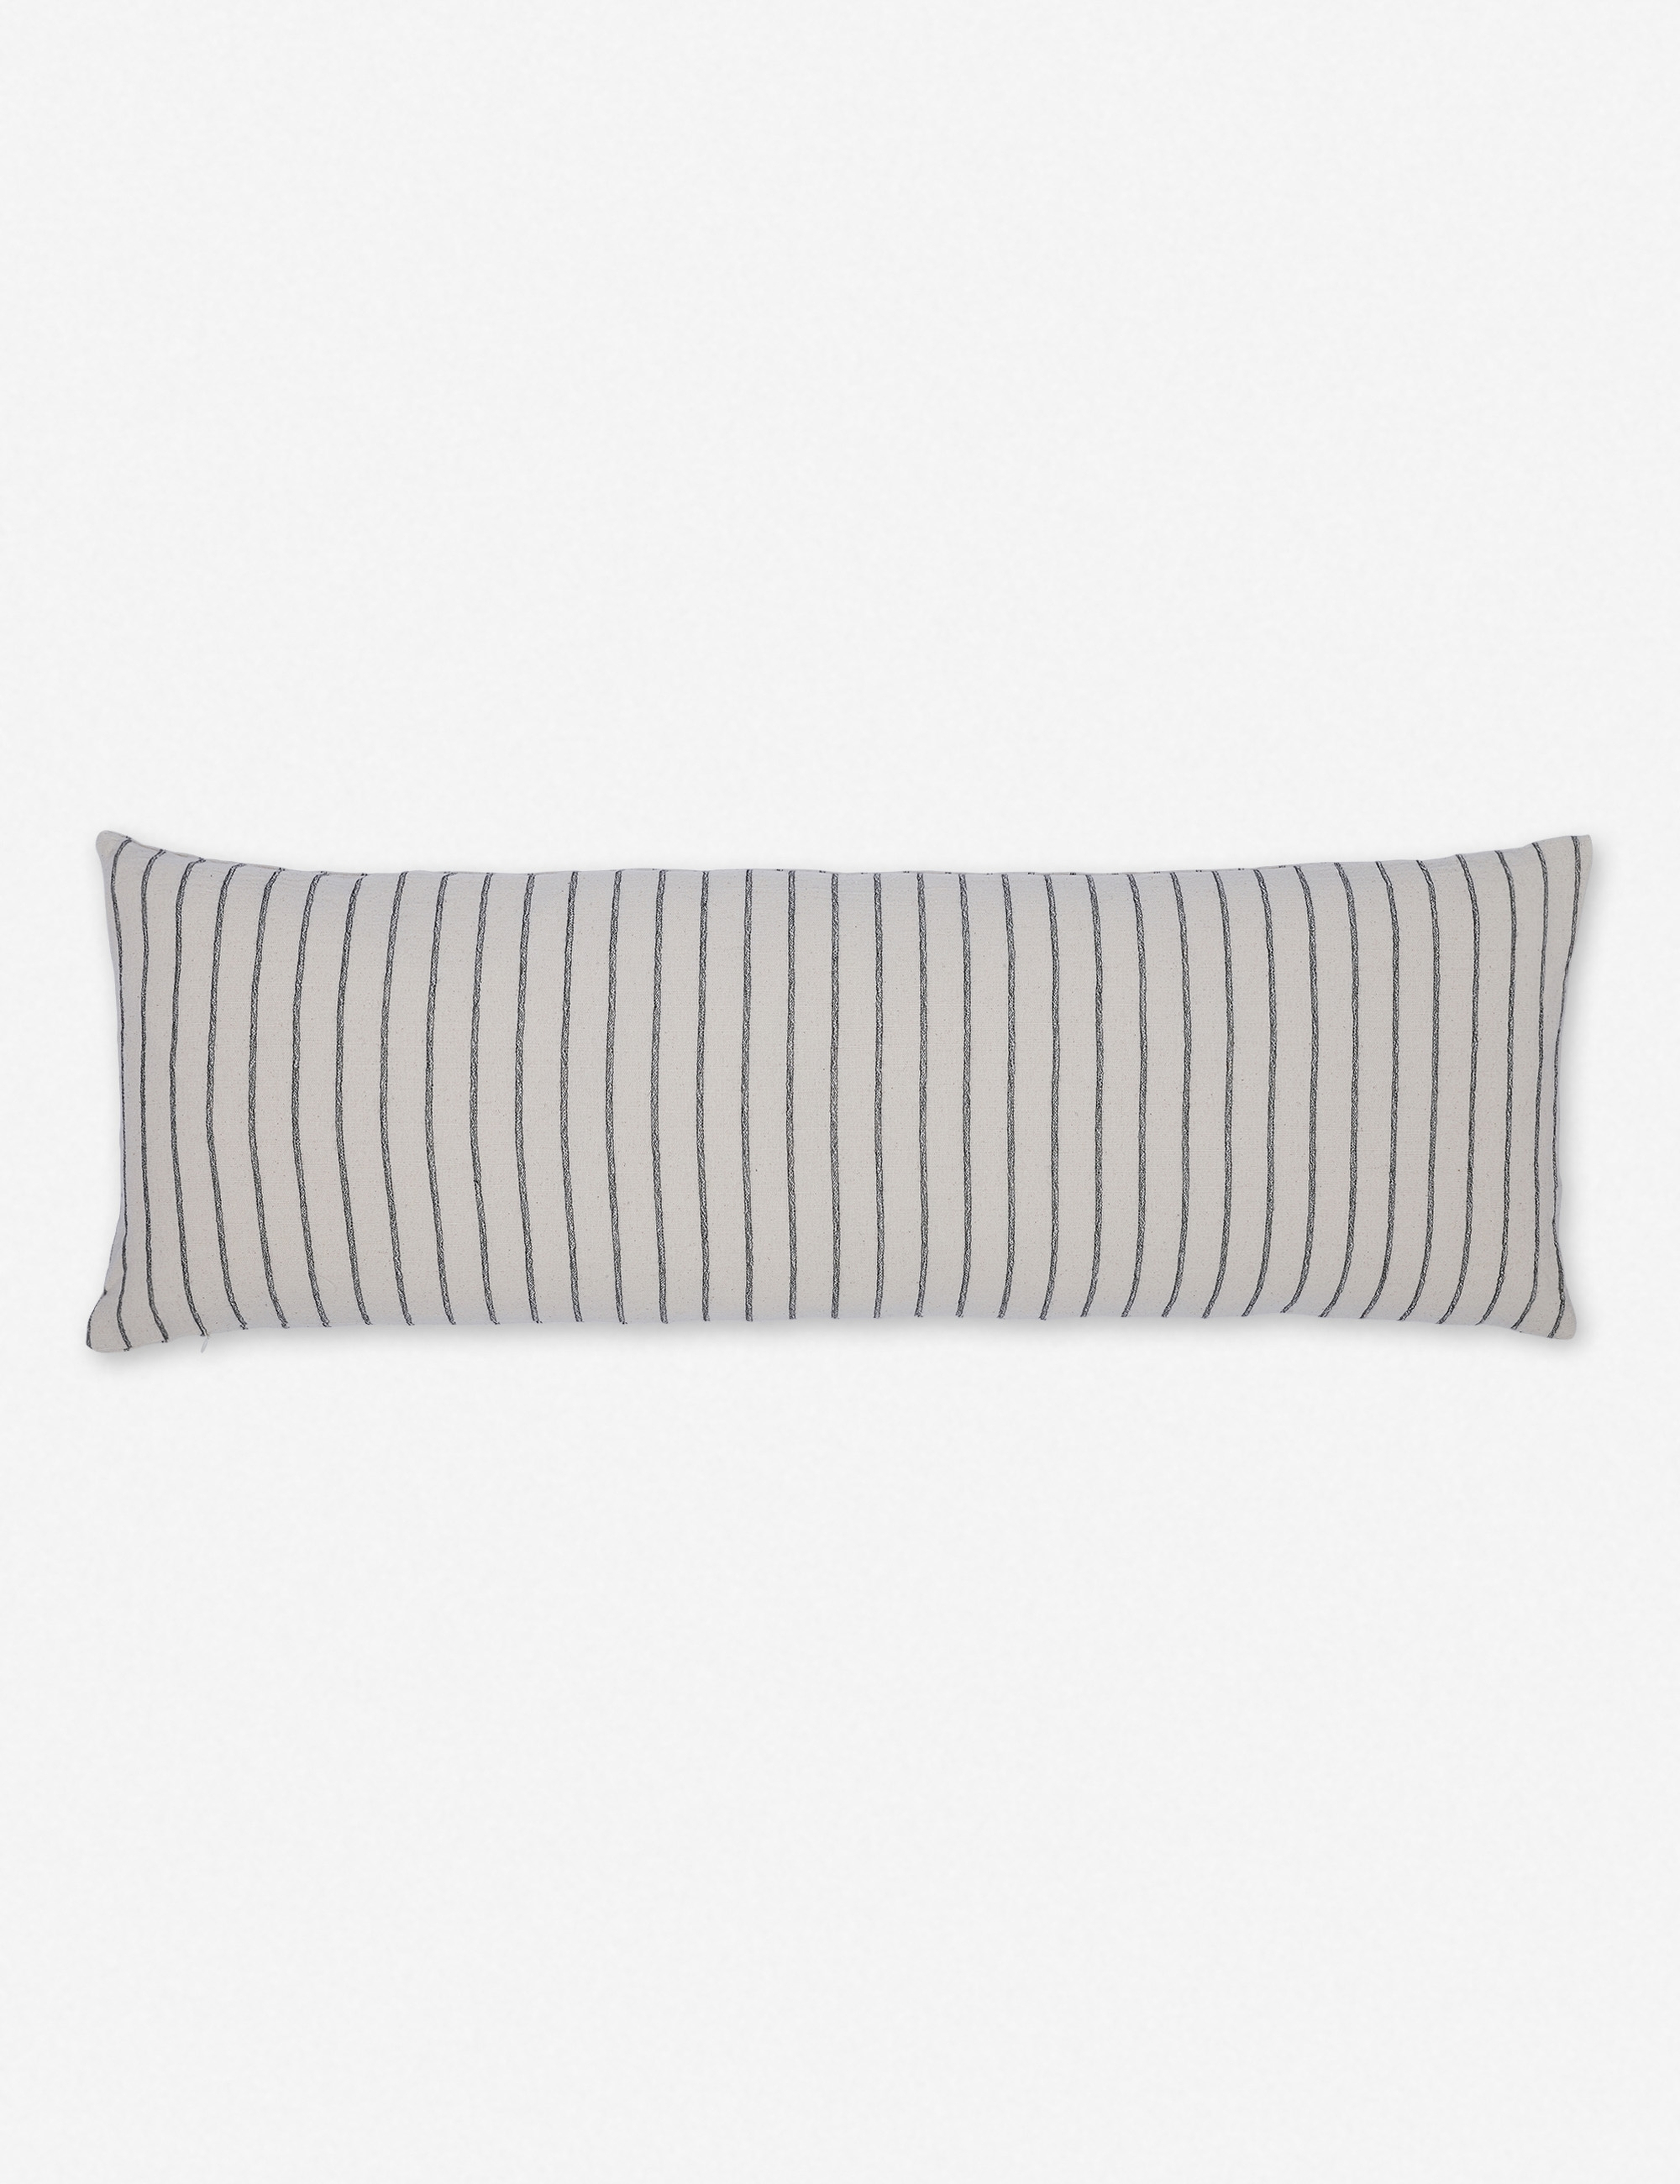 Ojai Long Lumbar Pillow, Black - 40 x 14 - Lulu and Georgia